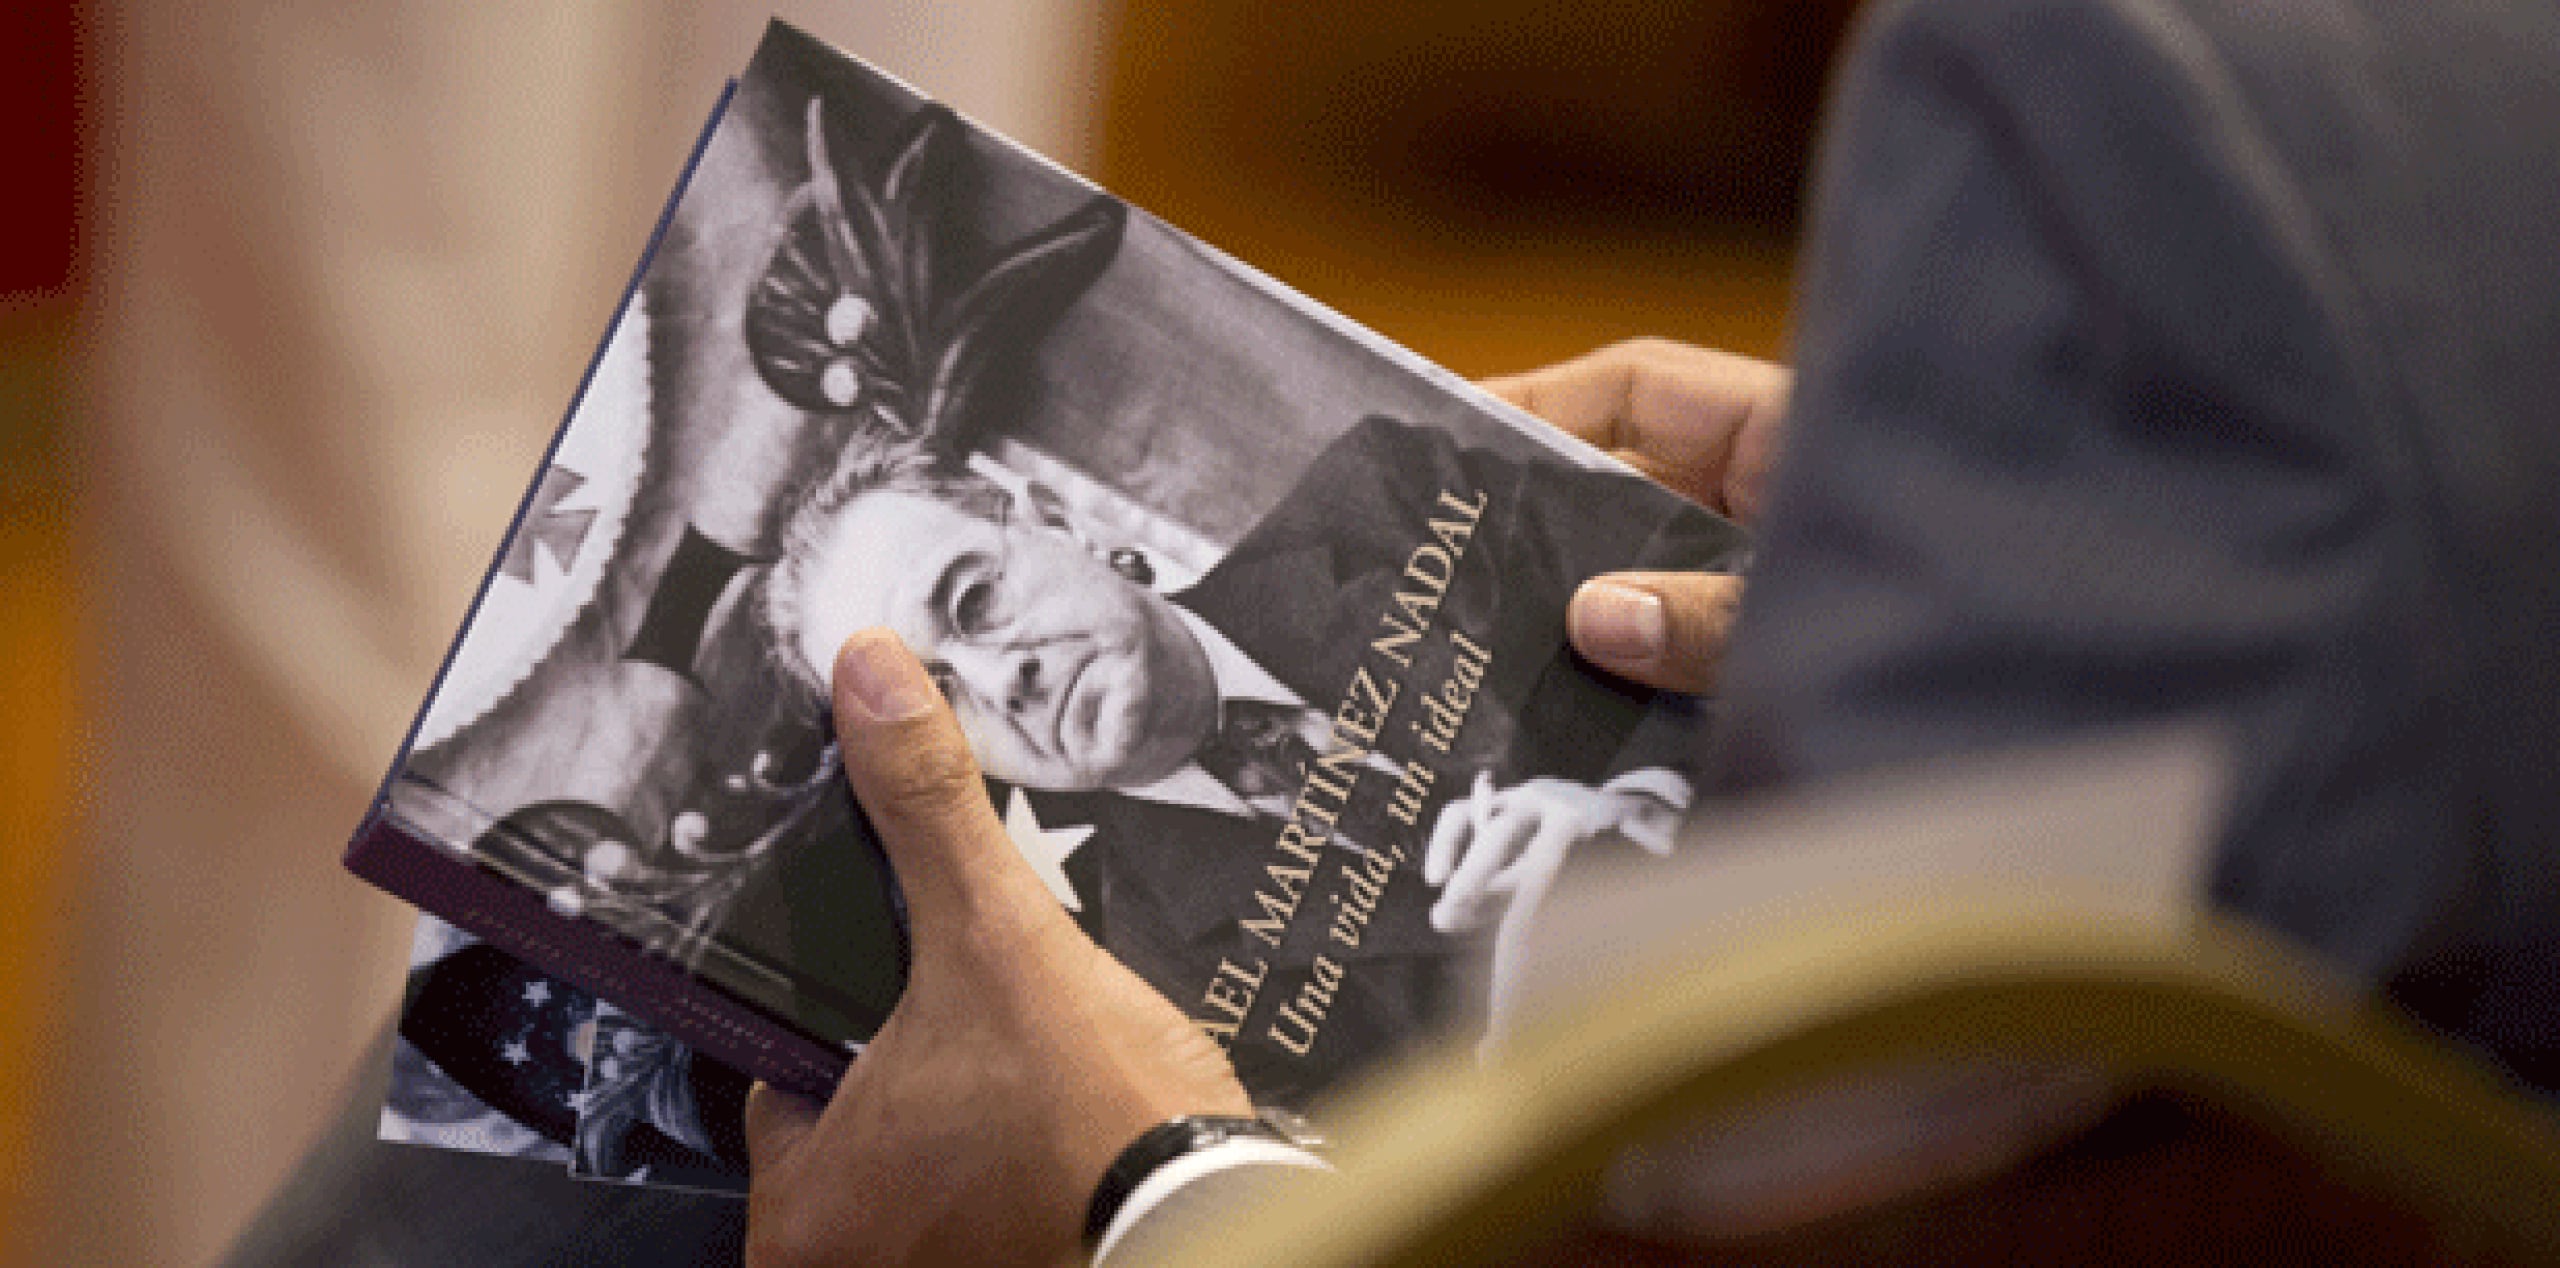 El libro “Rafael Martínez Nadal: una vida, un ideal” fue presentado hoy en el Senado. (tonito.zayas@gfrmedia.com)